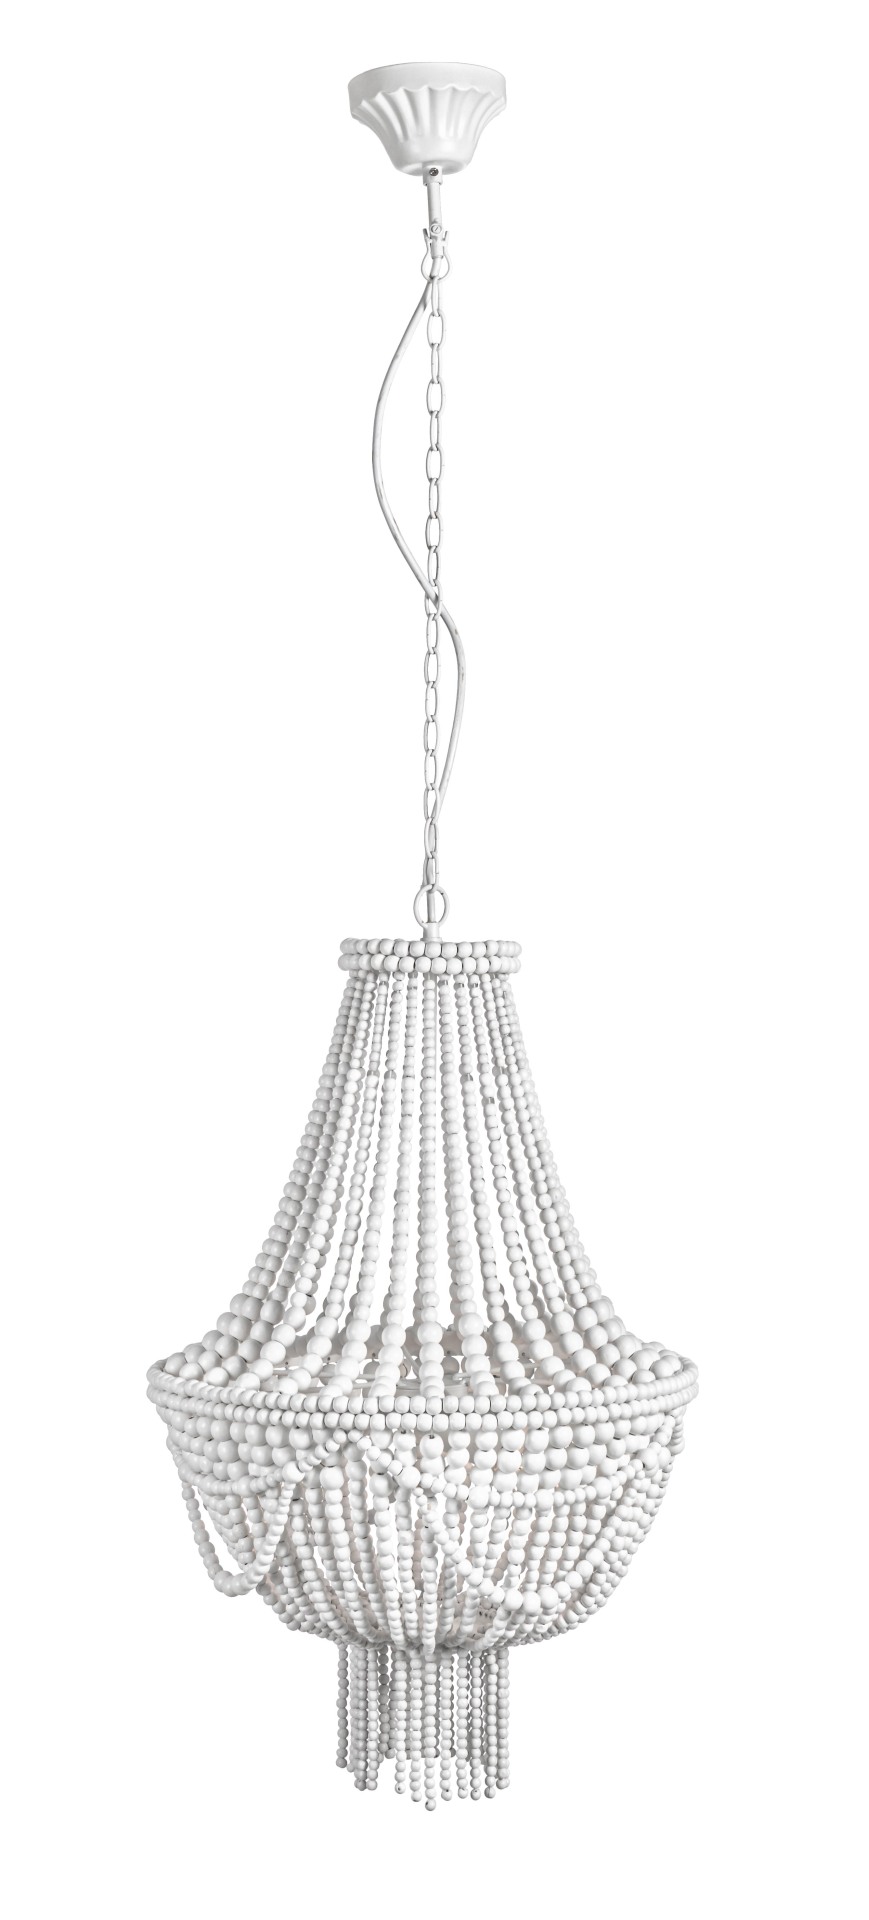 Die Hängeleuchte Pearls überzeugt mit ihrem klassischen Design. Gefertigt wurde sie aus Holzkugeln, welche einen weißen Farbton besitzt. Das Gestell ist aus Metall und hat eine weiße Farbe. Die Lampe besitzt eine Höhe von 60 cm.